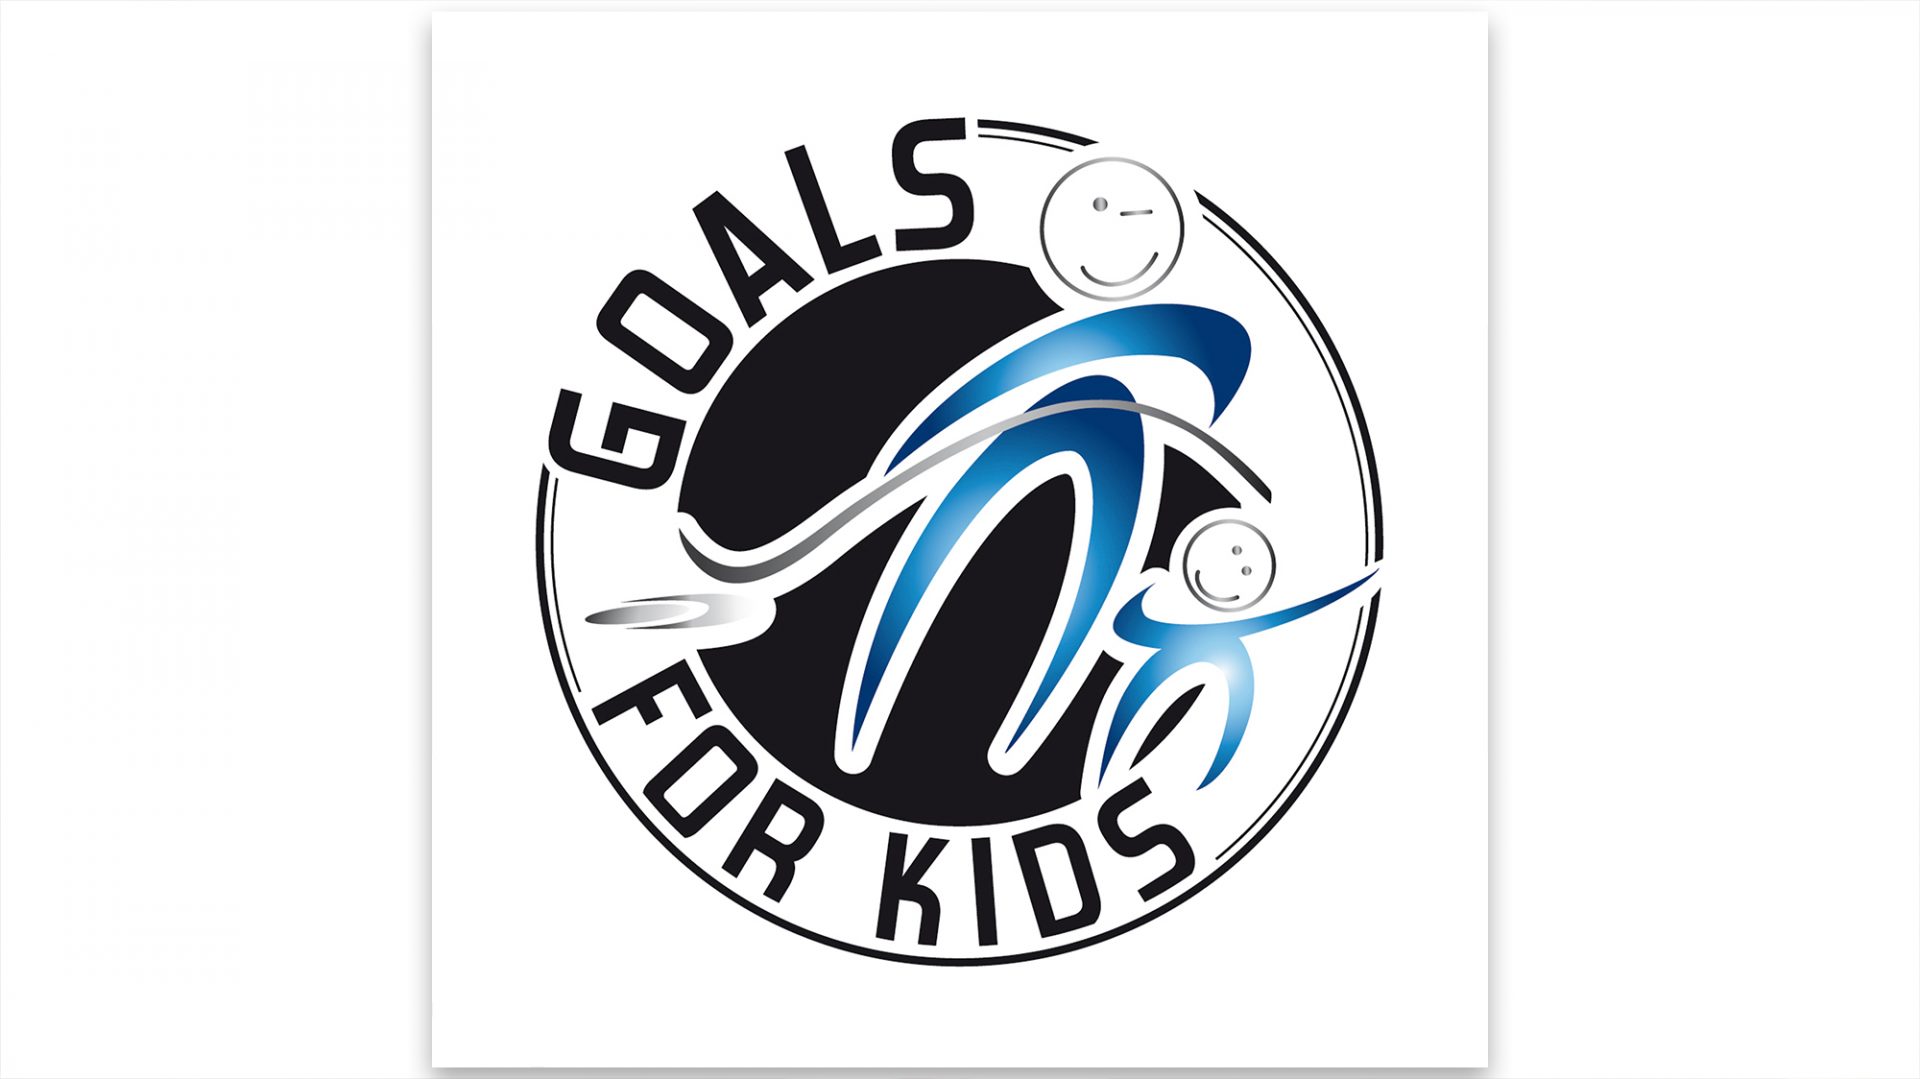 Urkunden und Ergebnisse des Goals for Kids RUN